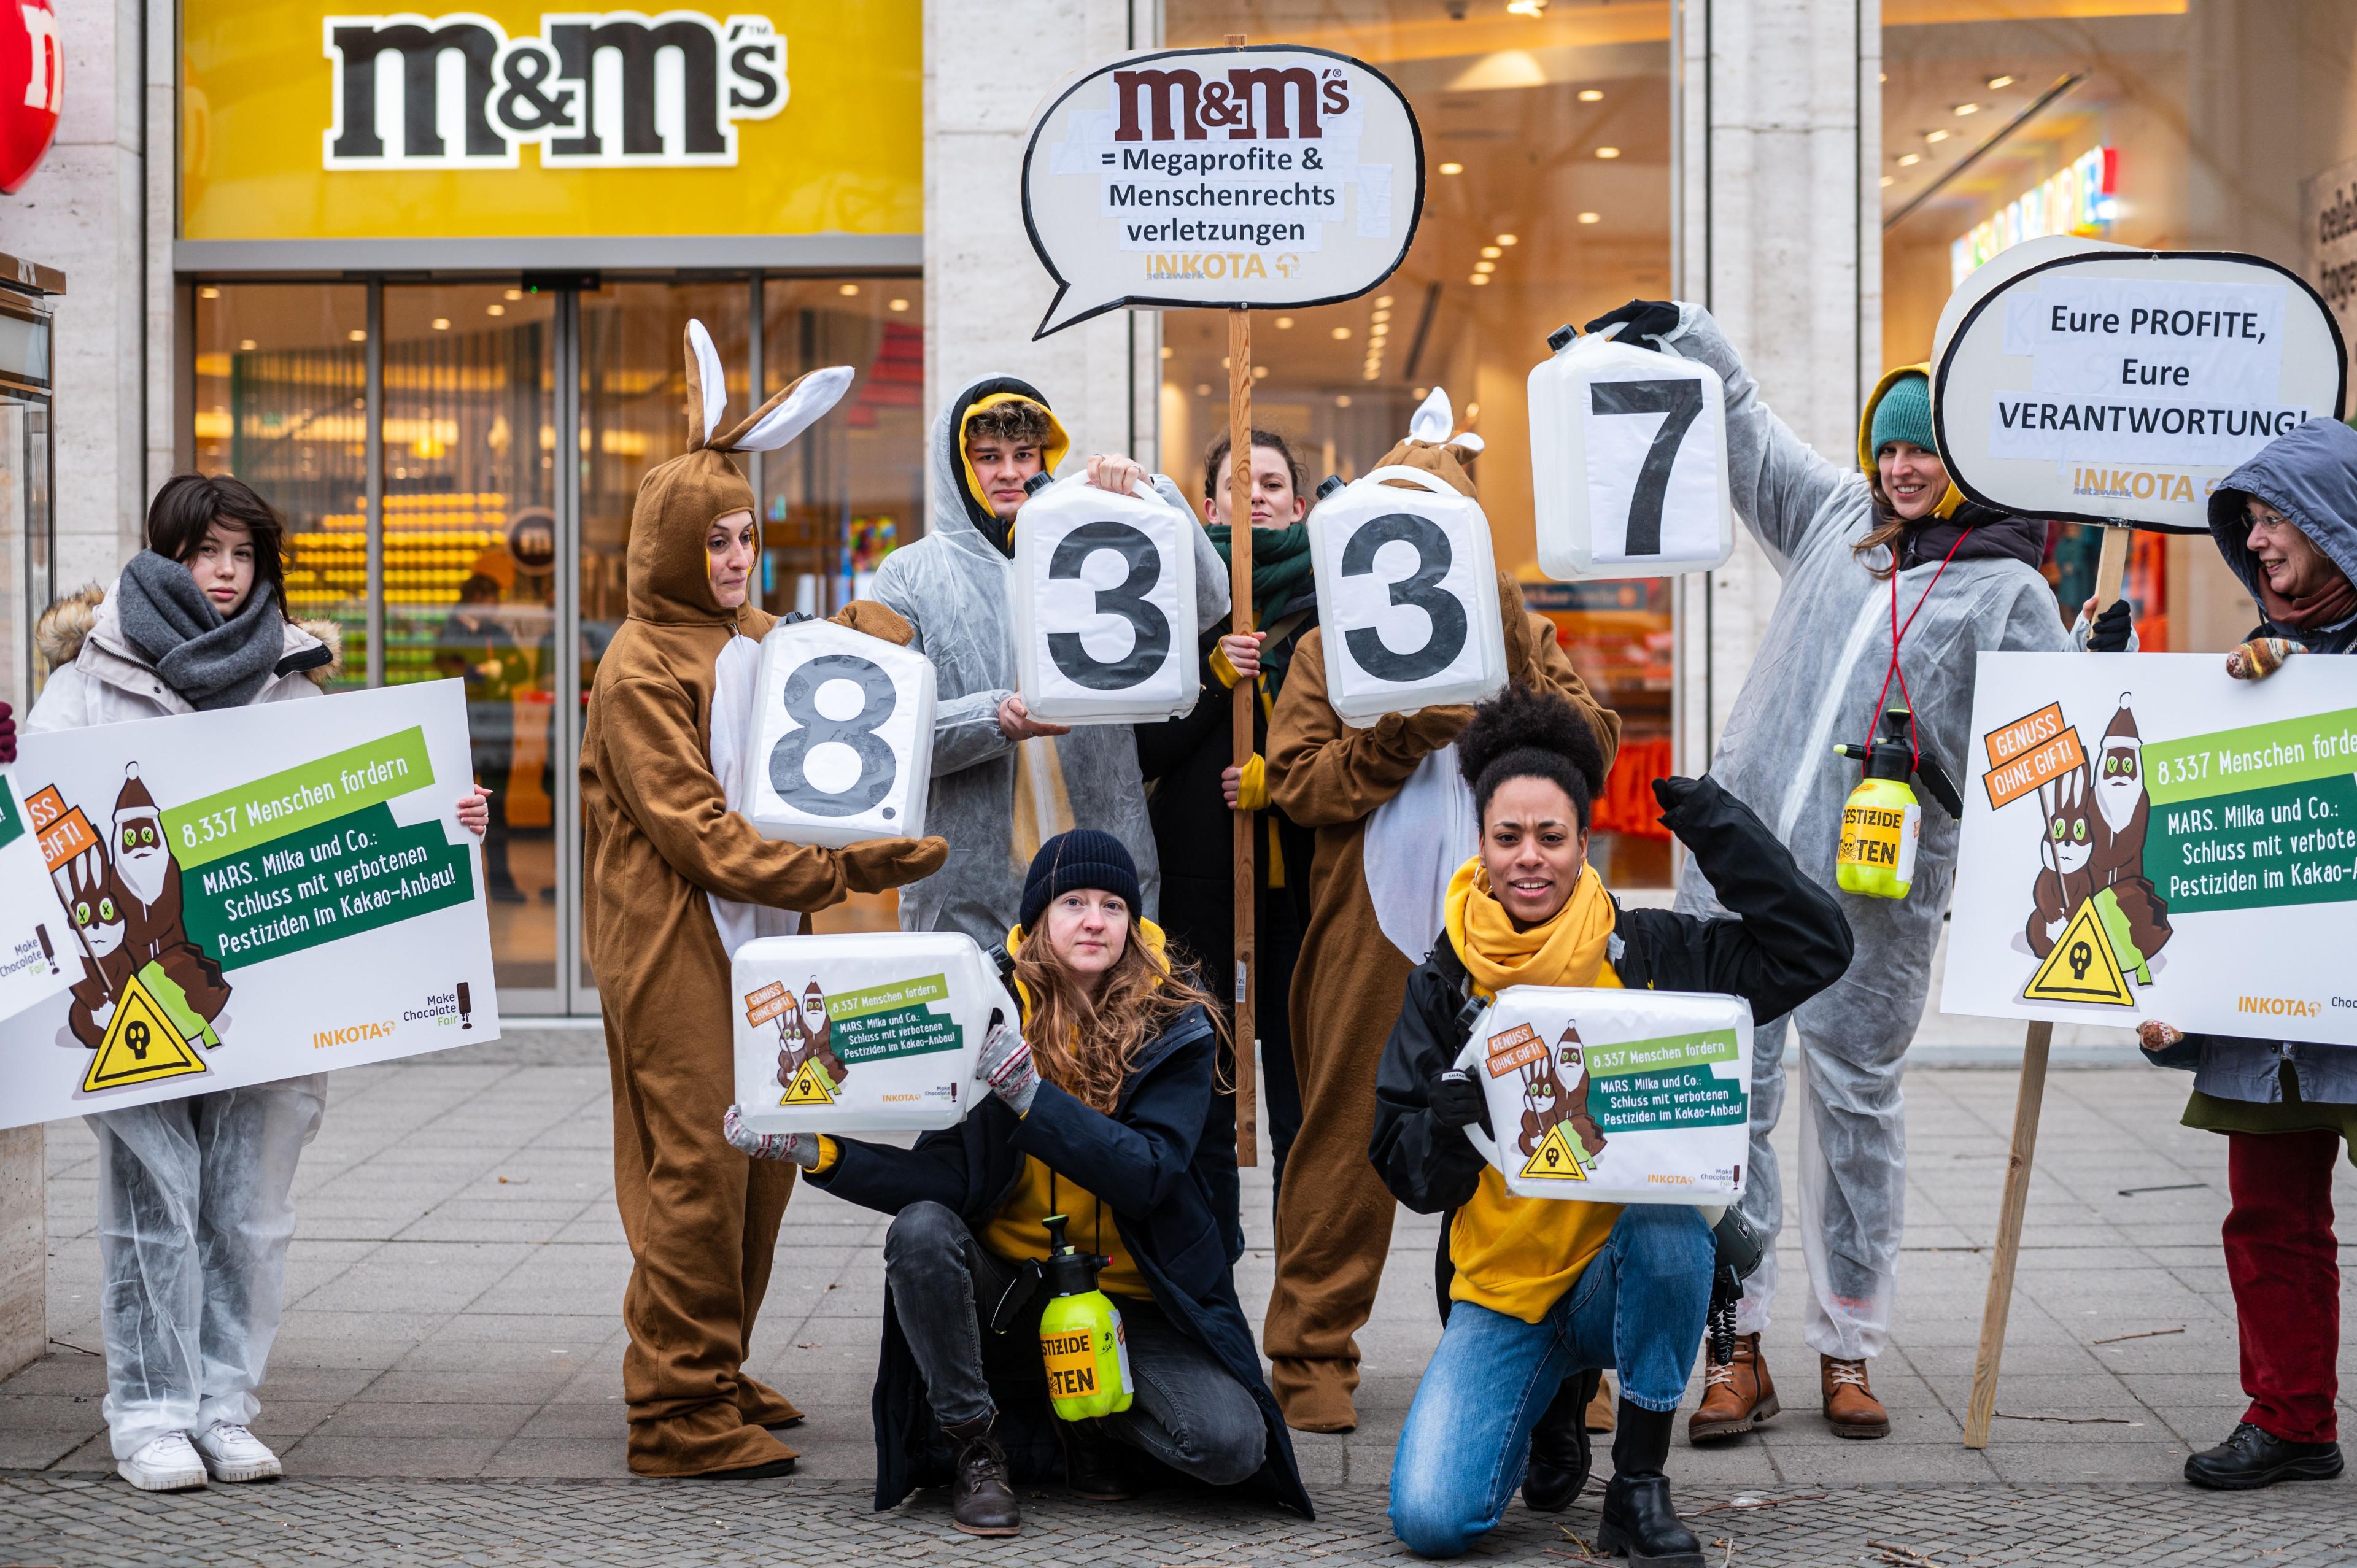 Das INKOTA-Team bei der Kundgebung und Protestaktion vor dem Mars M&M Store in Berlin zum Abschluss der "Genuss ohne Gift"-Aktion